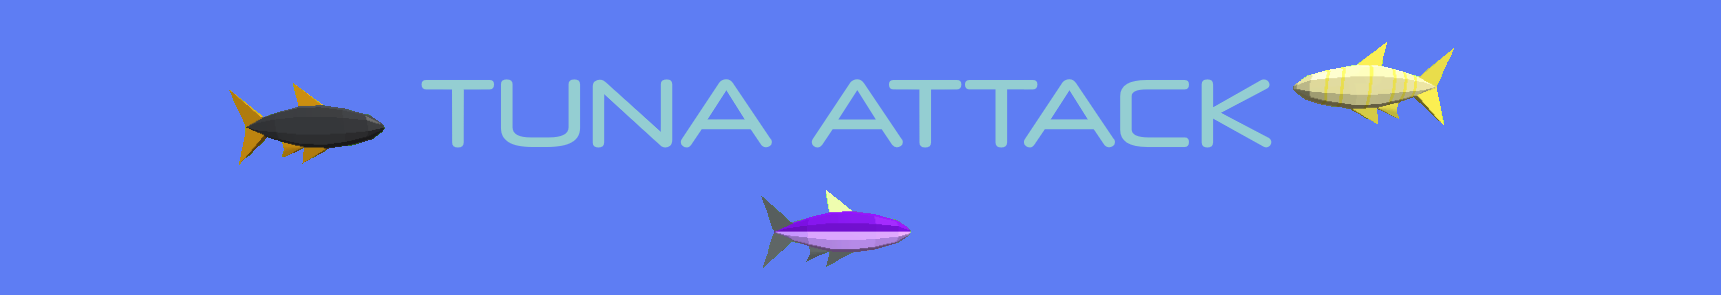 Tuna Attack